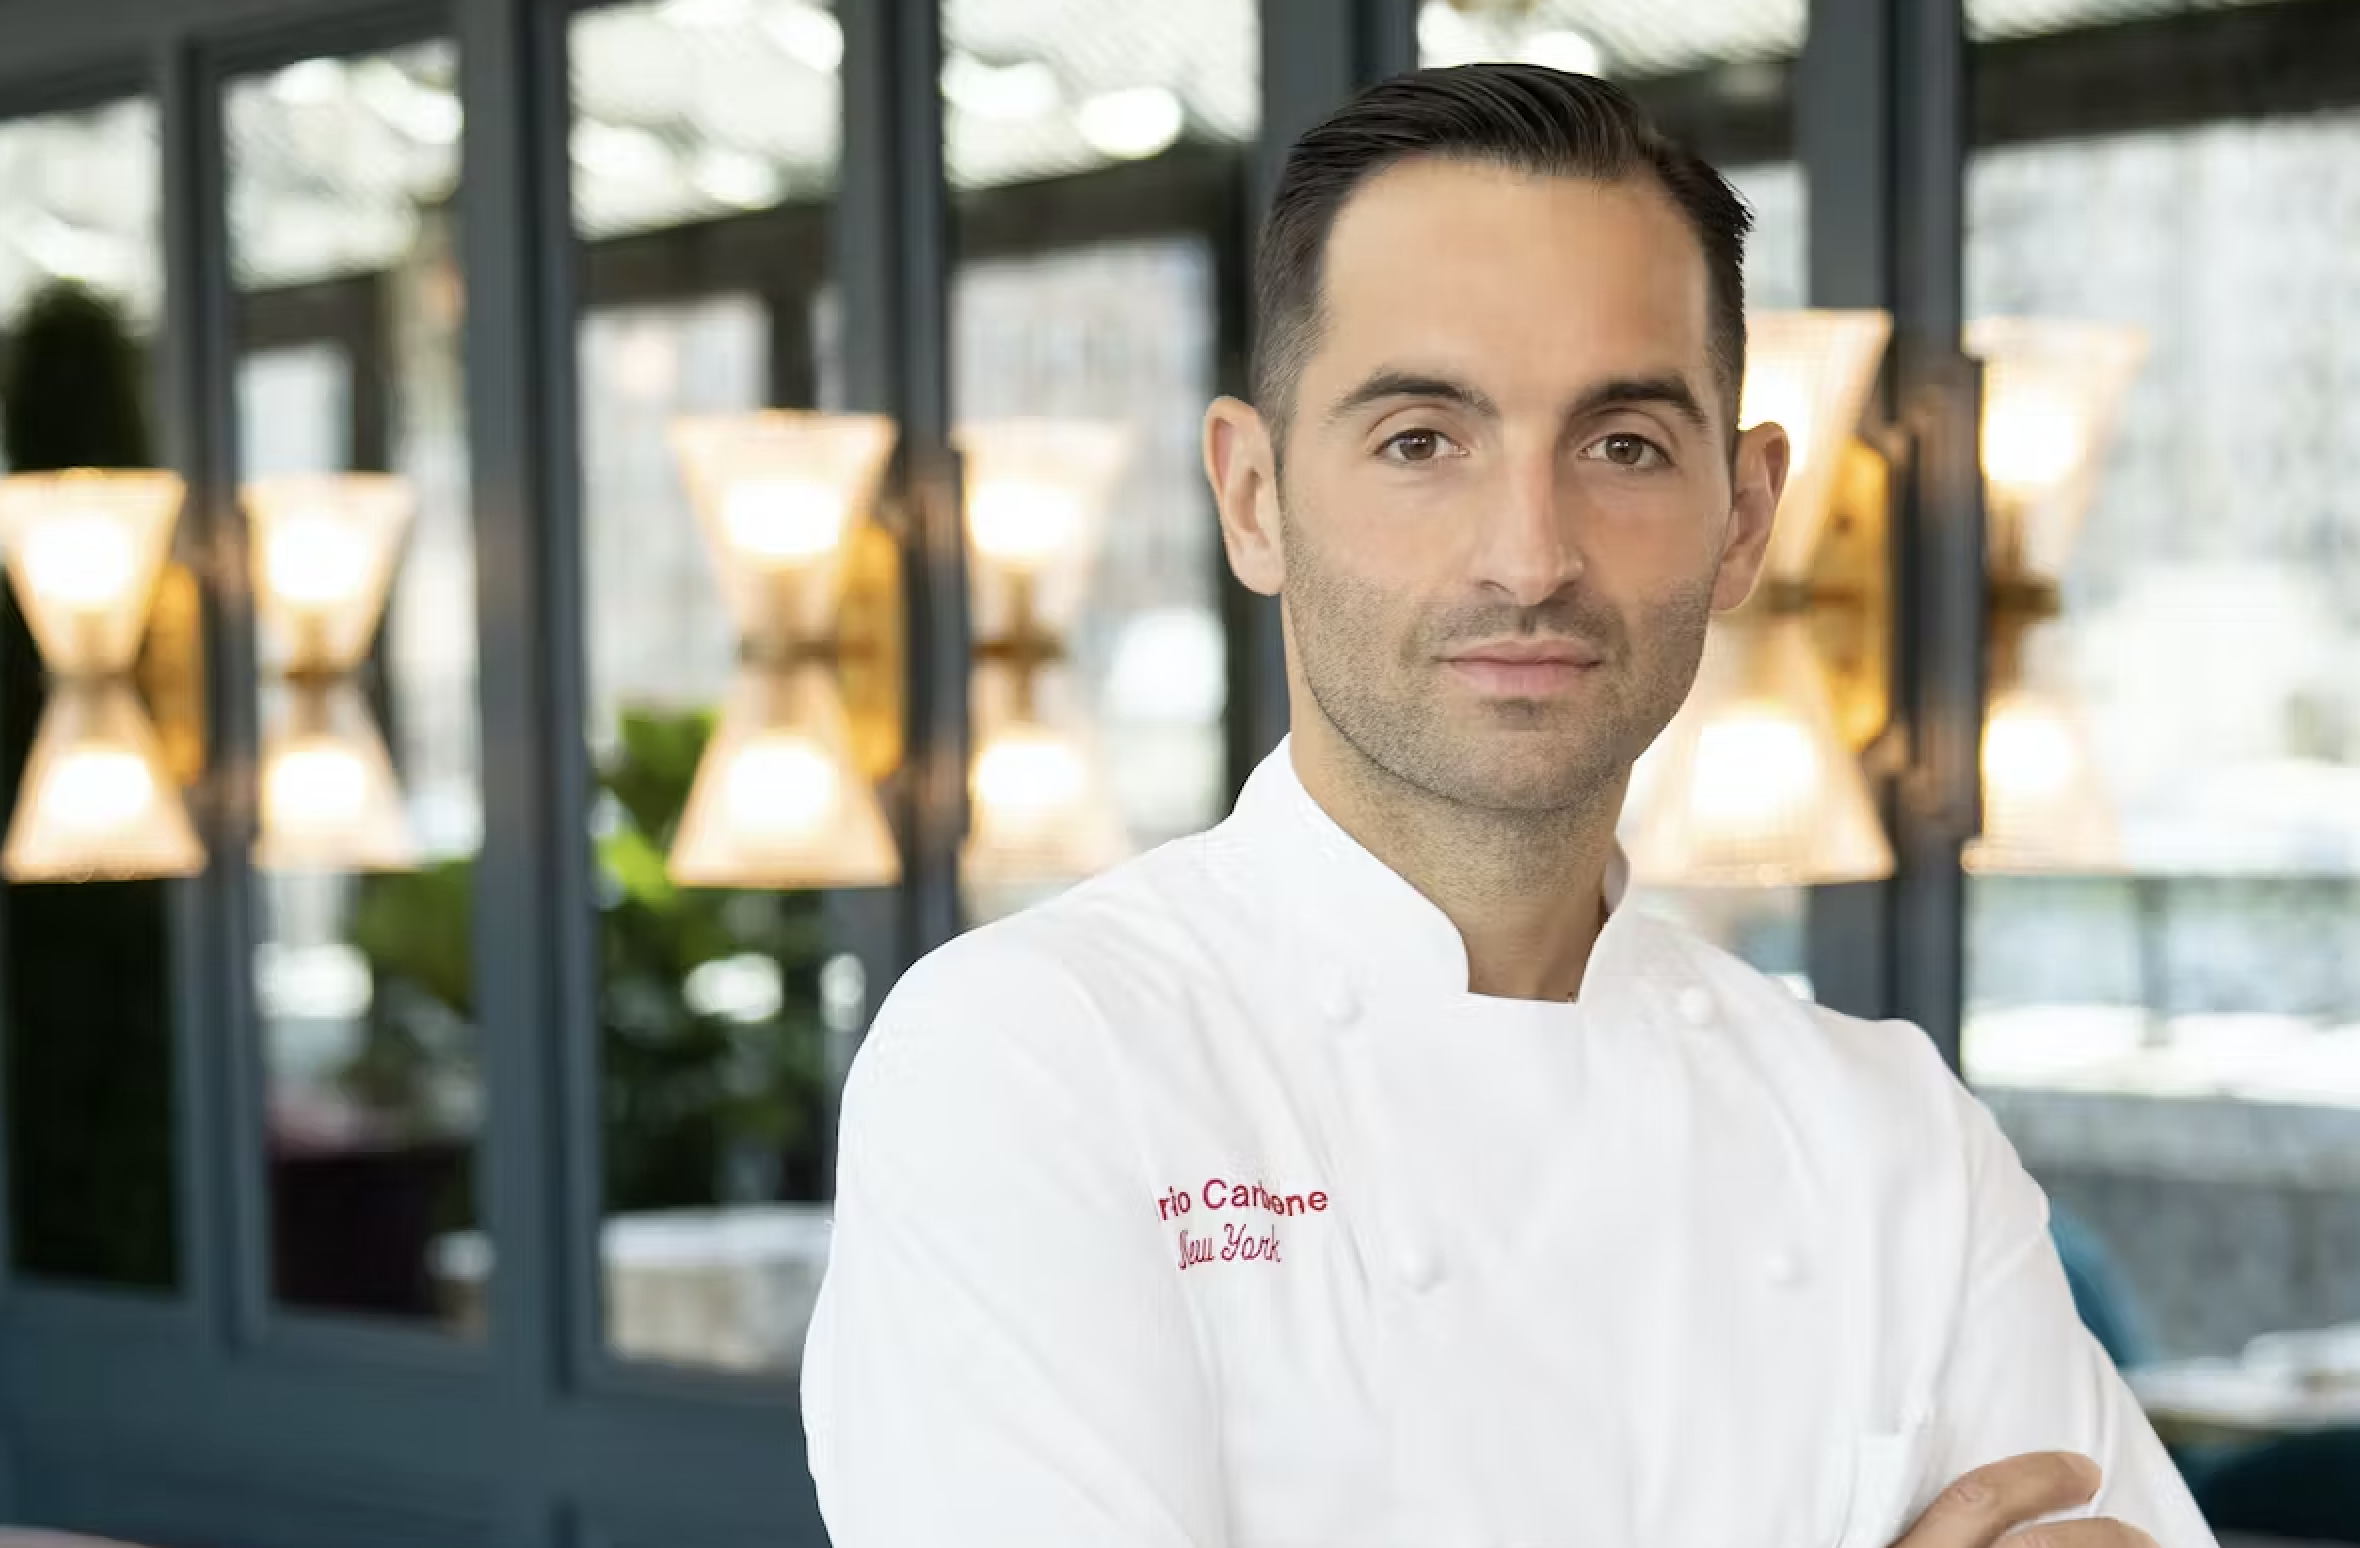 Mario Carbone, un destacado chef y visionario culinario, ha dejado su marca en el mundo de la gastronomía con sus innovadores y deliciosos platillos. (MFG)